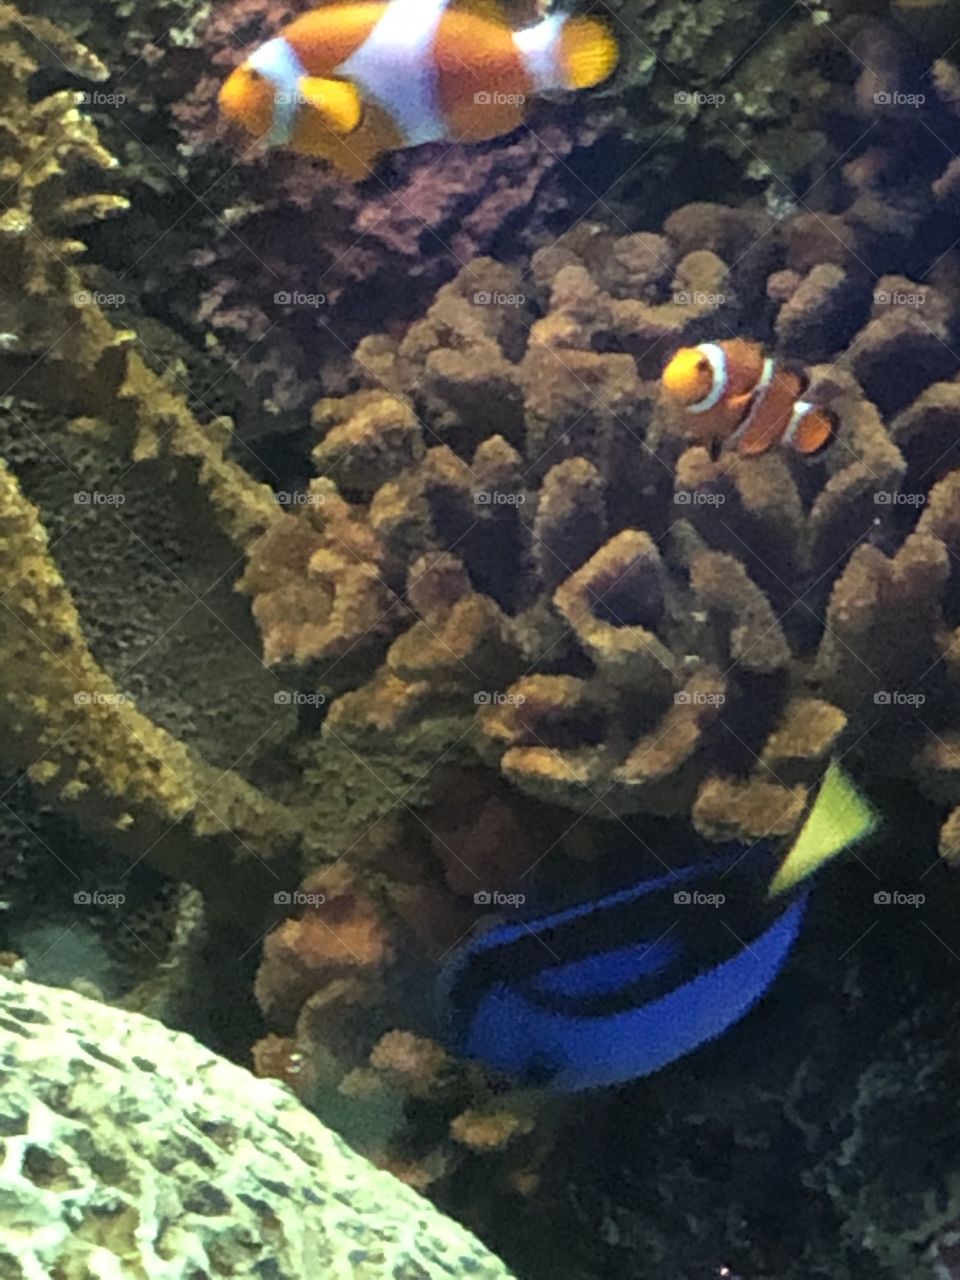 Nemo and Dori